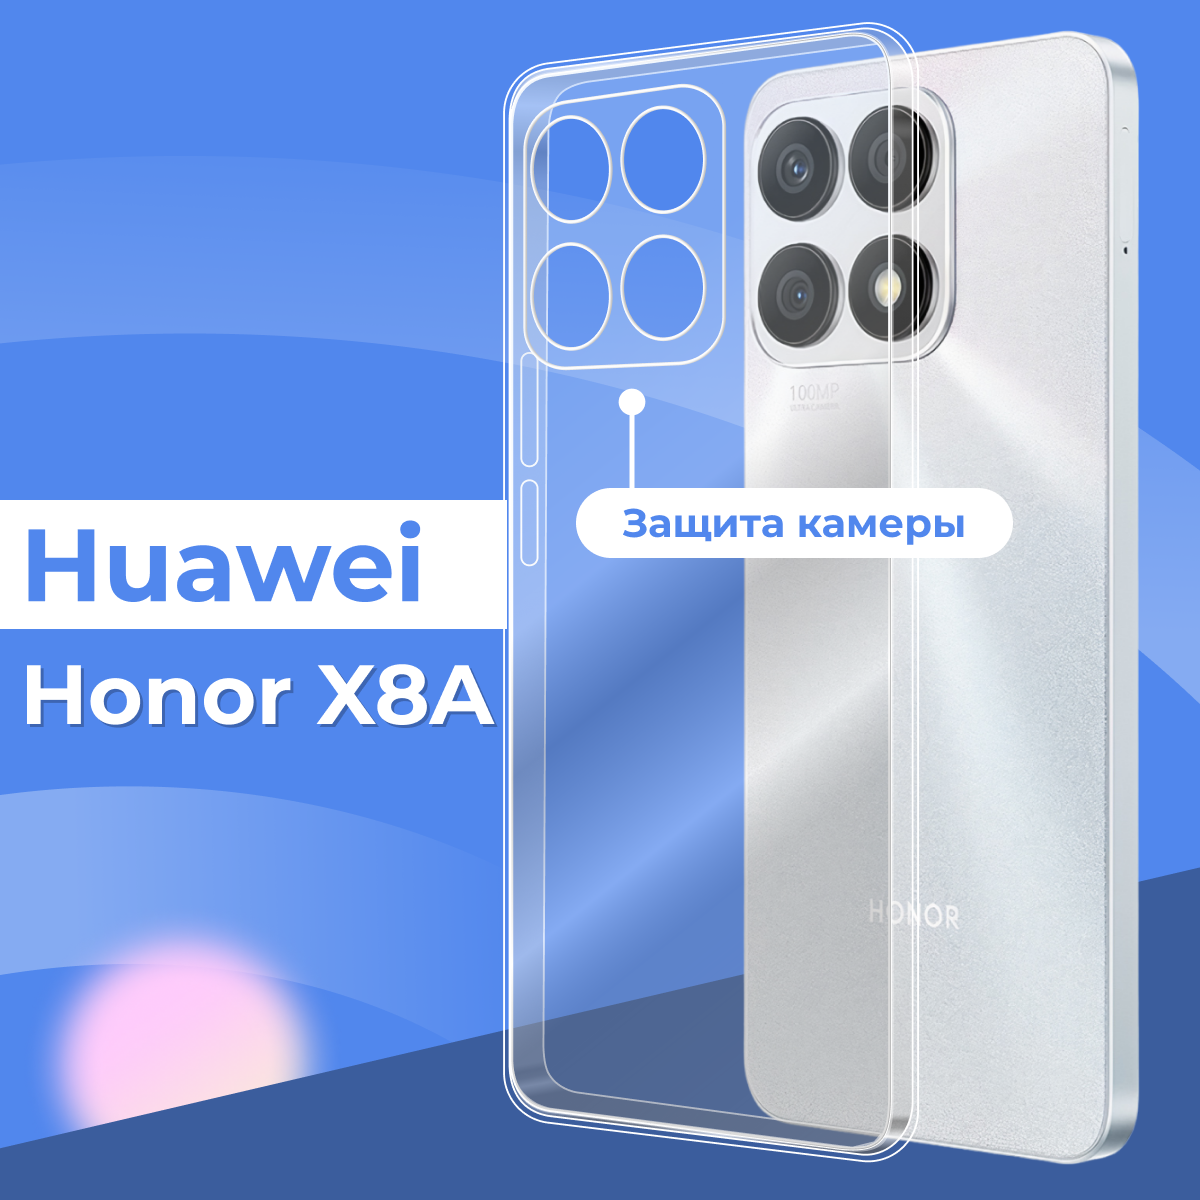 Ультратонкий защитный силиконовый чехол для смартфона Huawei Honor X8A / Прозрачный противоударный чехол с защитой камеры на телефон Хуавей Хонор Х8А